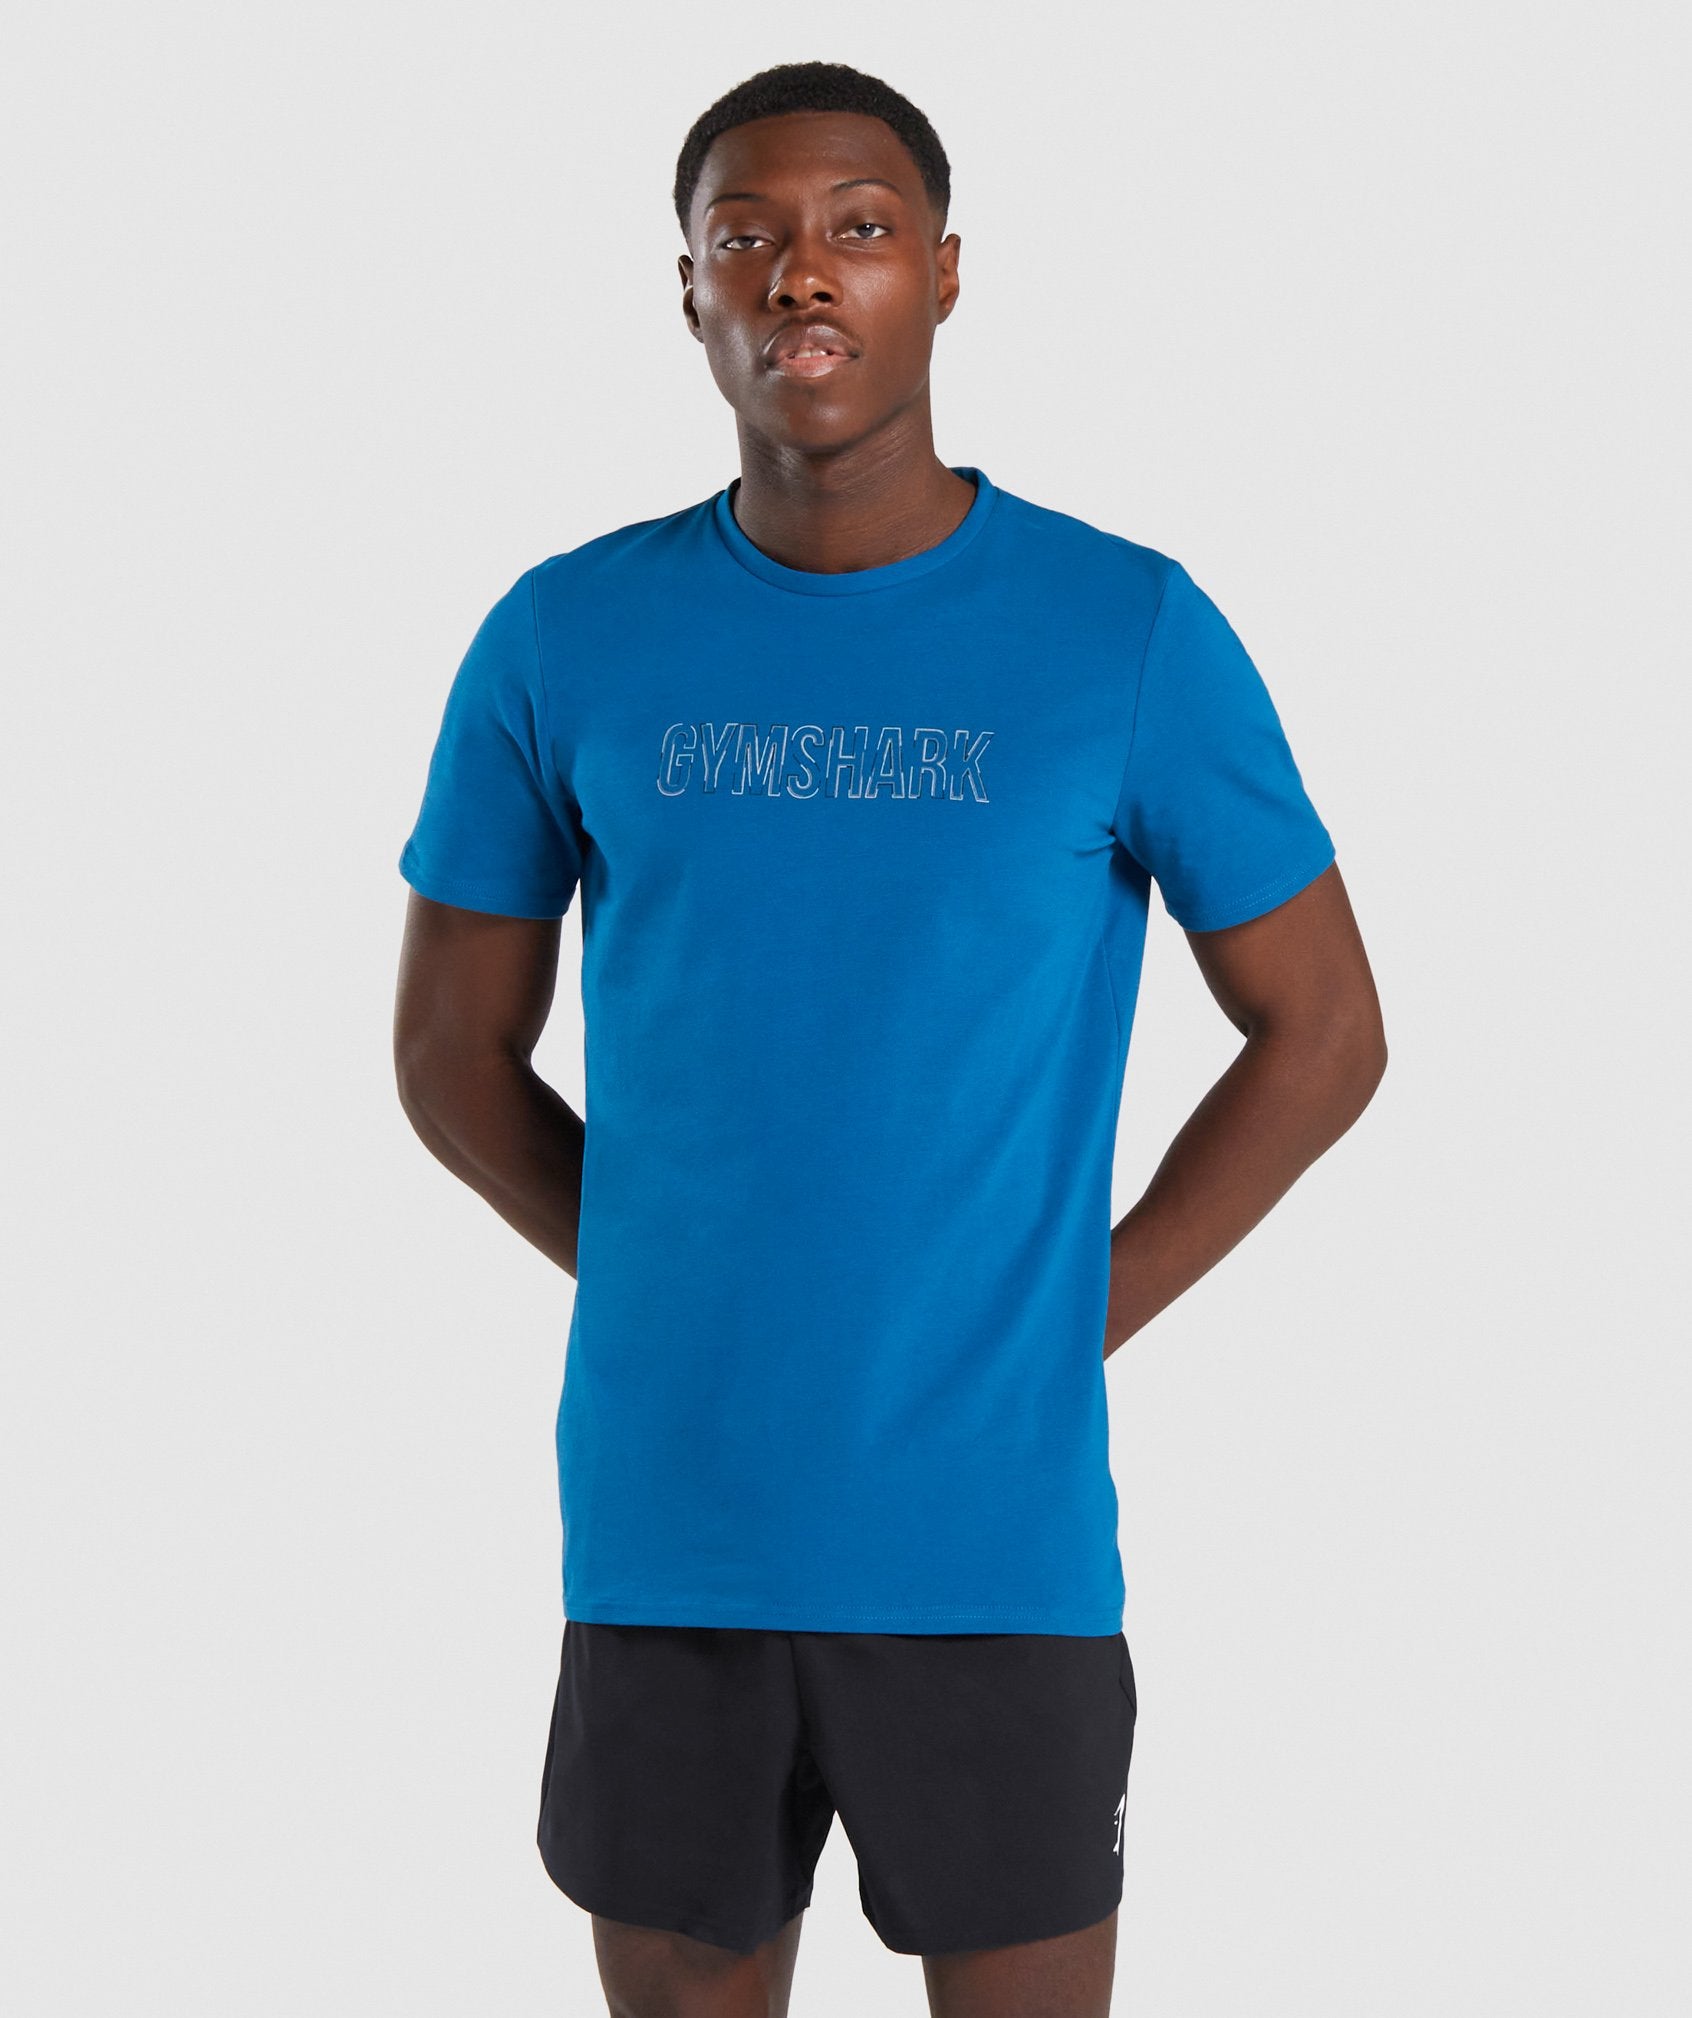 Gymshark Outline T-shirt- Teal | Gymshark